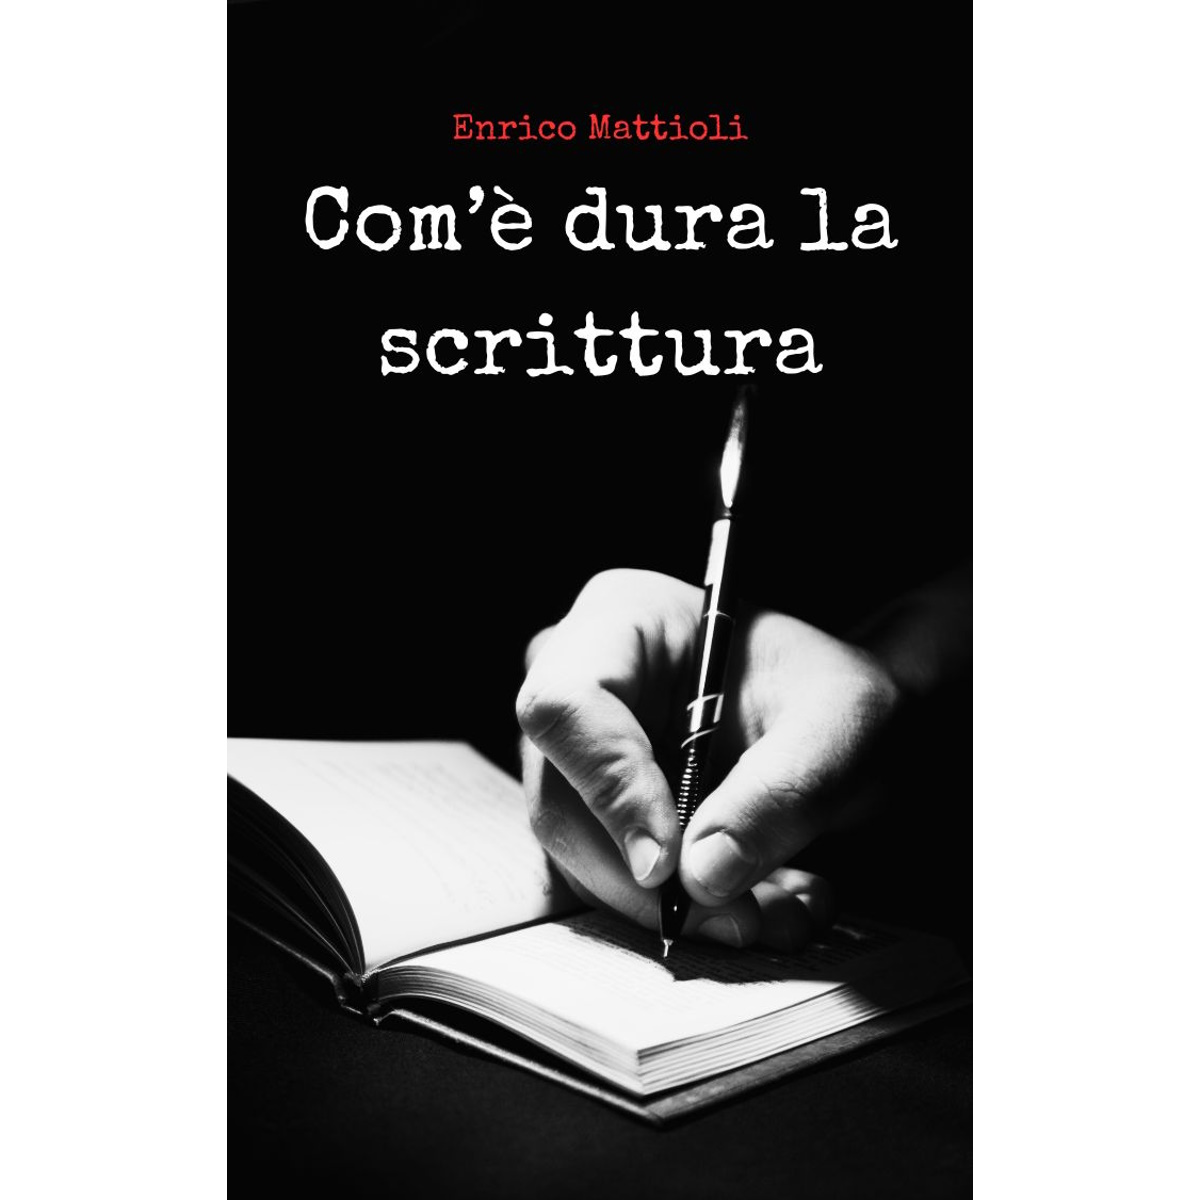 Com’è dura la scrittura — Enrico Mattioli — Il libro è morto?